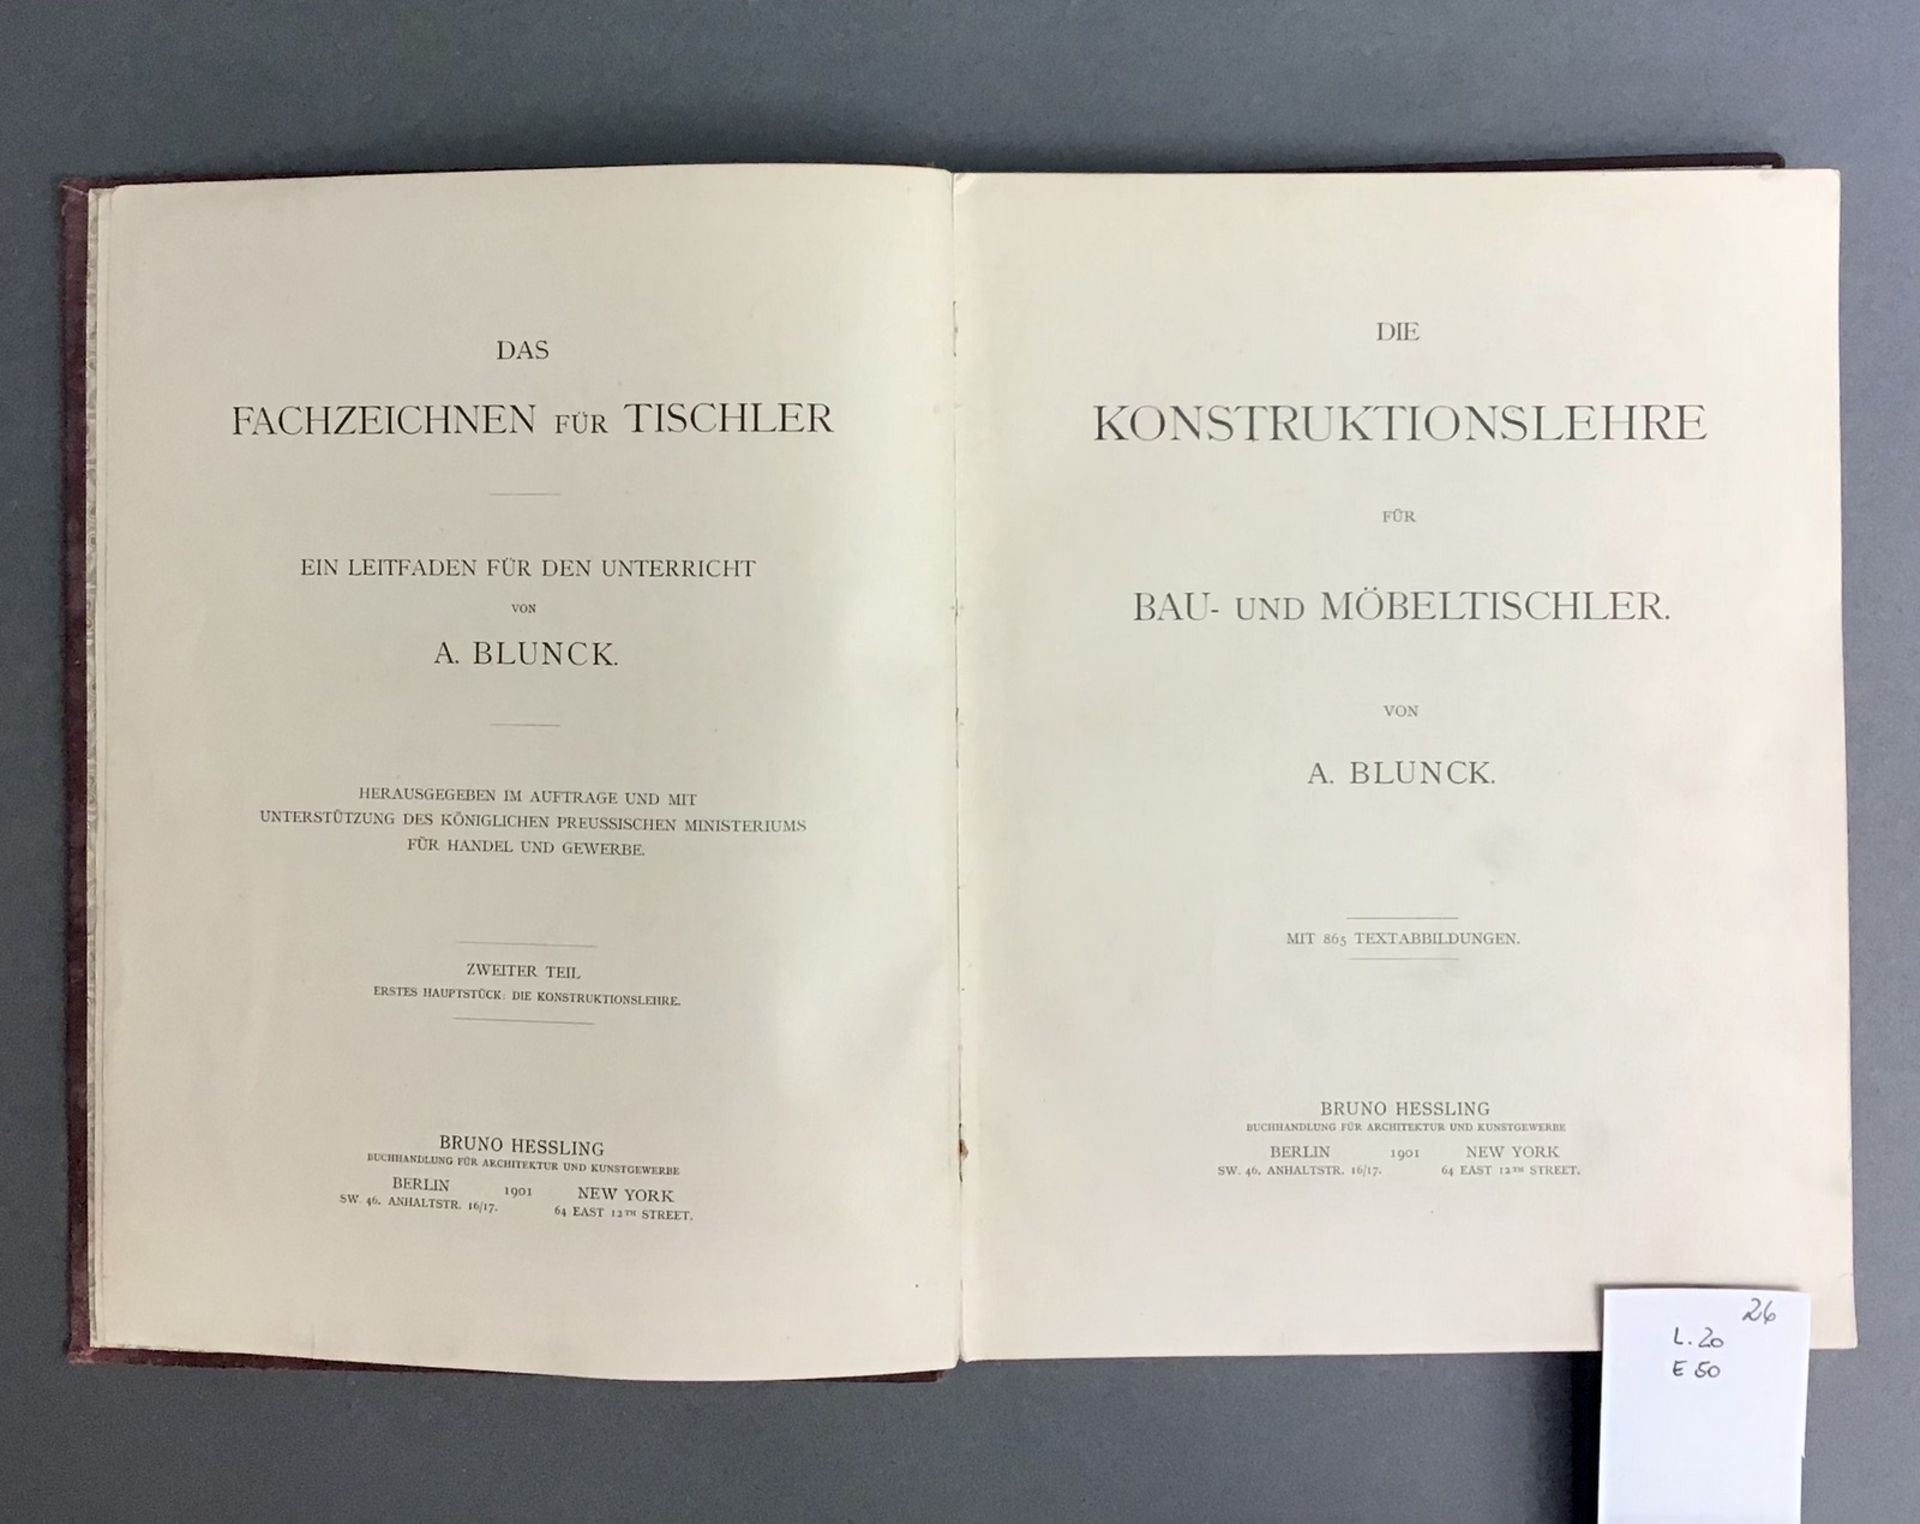 Fachbuch für Bau- und Möbeltischler 1901, "Die Konstruktionslehre", A. Blunck, das Fachzeichnen